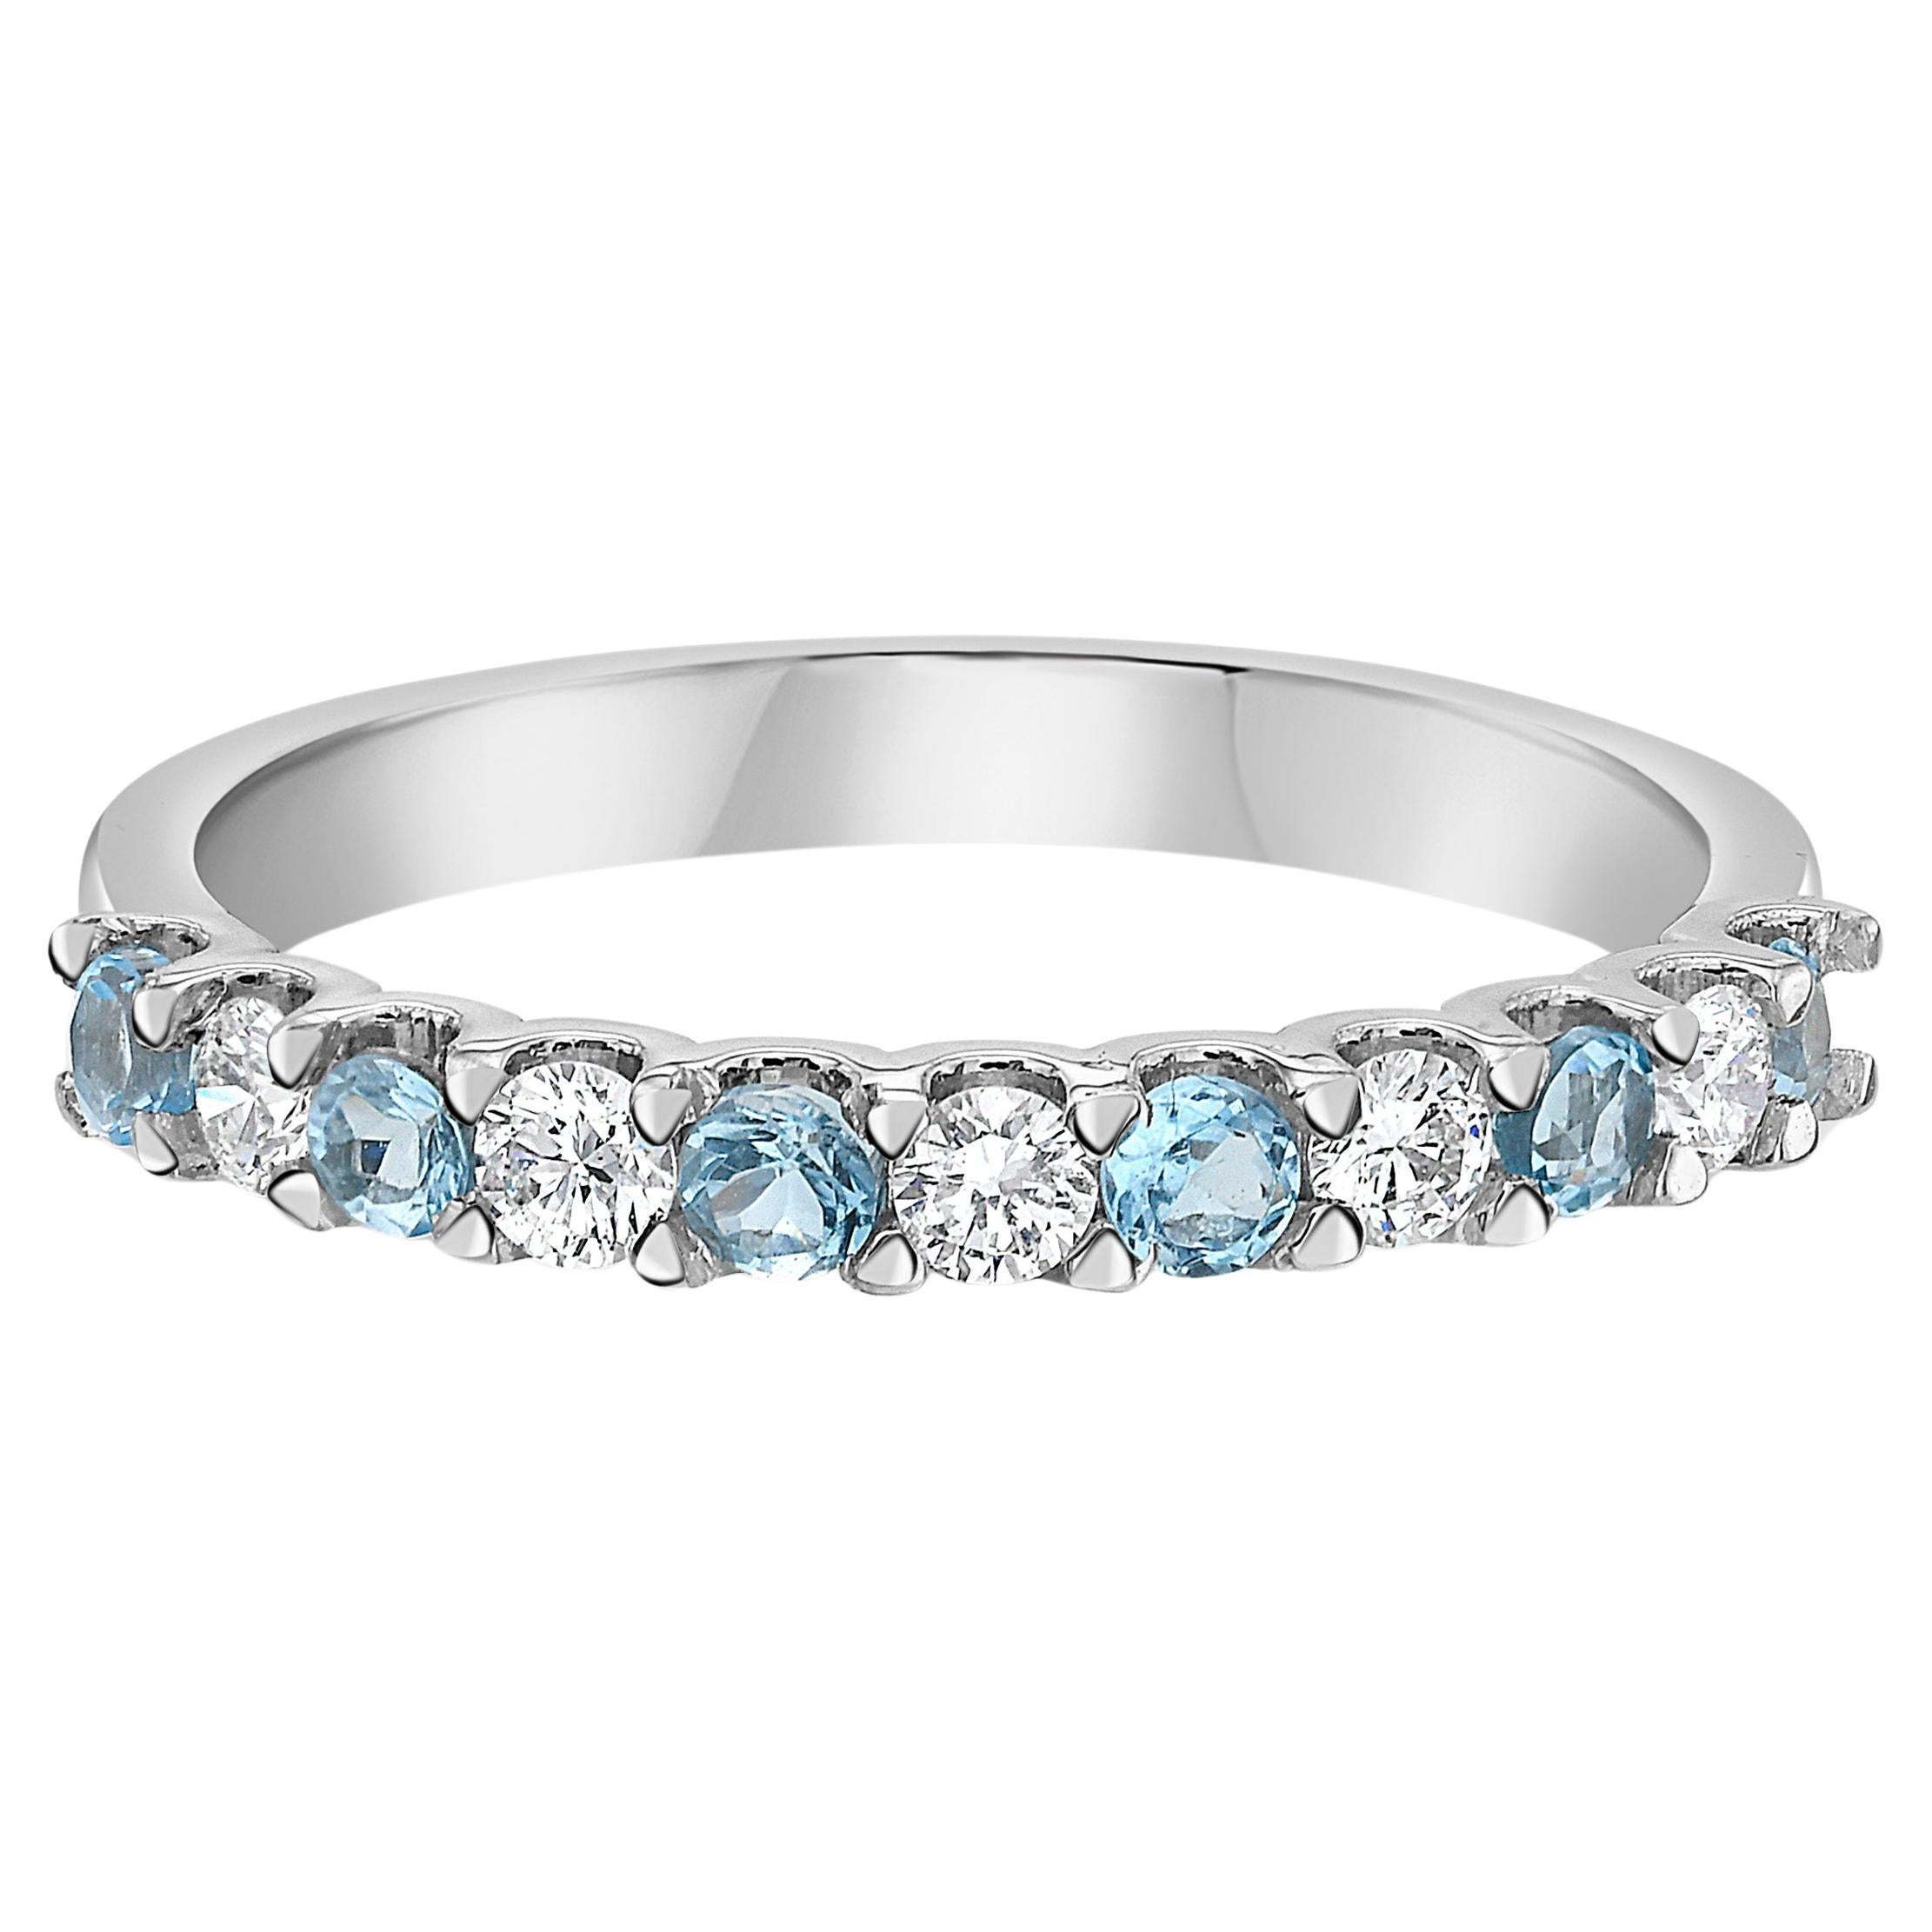 Gönnen Sie sich puren Luxus mit unserem exquisiten Paraíba Turmalin- und Diamantring. In diesem stapelbaren Ring aus 18 Karat Weißgold wechseln sich elektrisch blaue Paraíba-Turmalinsteine mit Diamanten in VS-Qualität ab. Das perfekte Schmuckstück